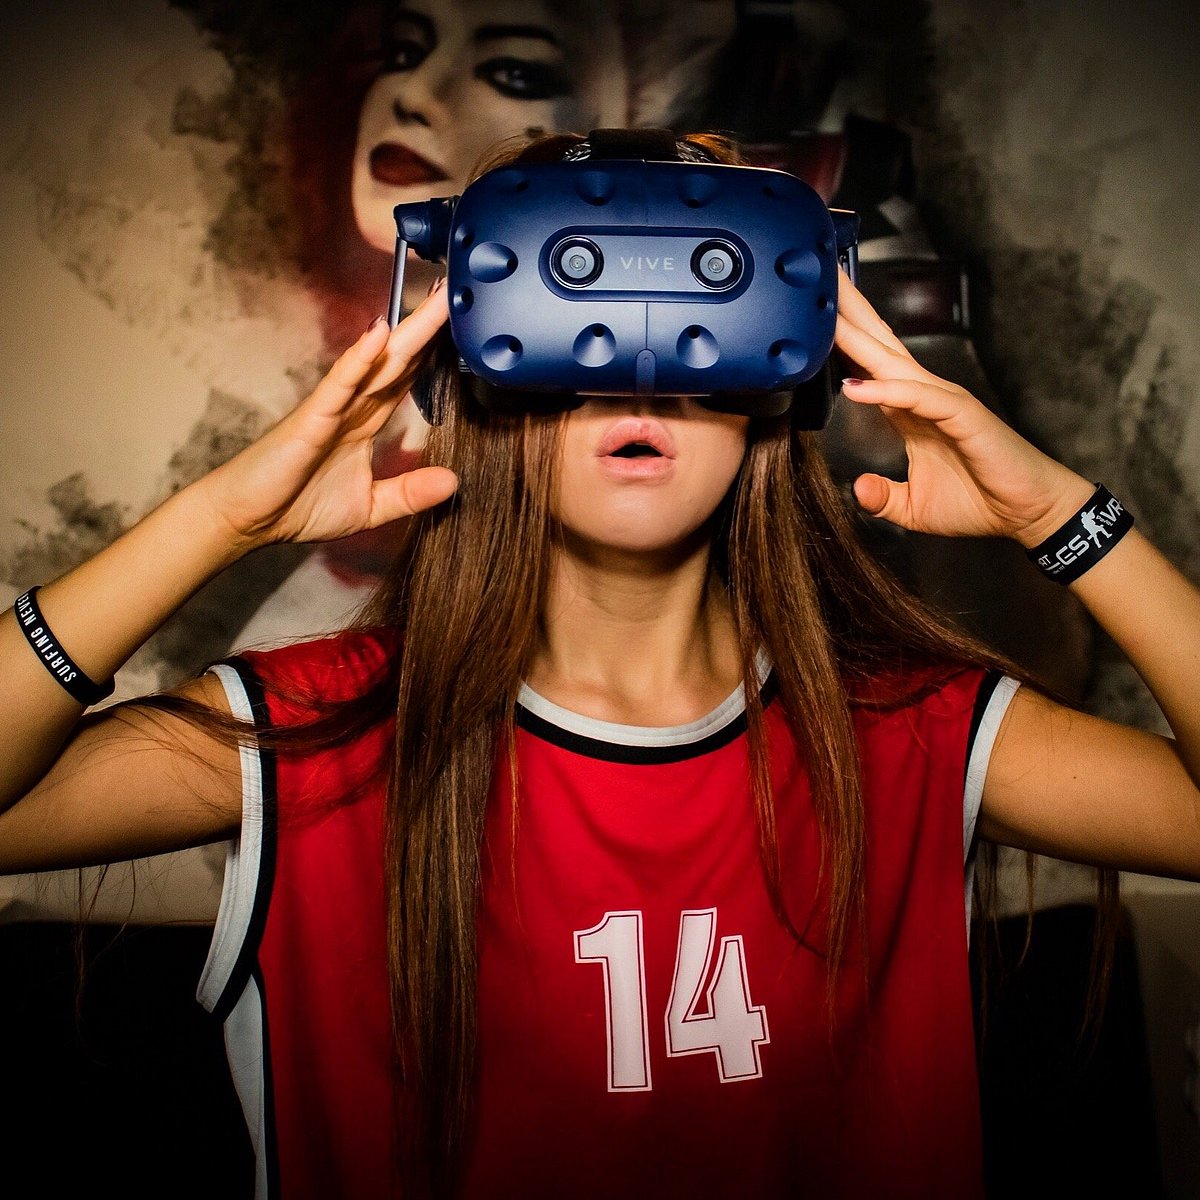 Vr ярославль. Кафе виртуальной реальности 360. 360 VR кафе Ярославль. Кафе виртуальной реальности Ярославль. VR девушка.